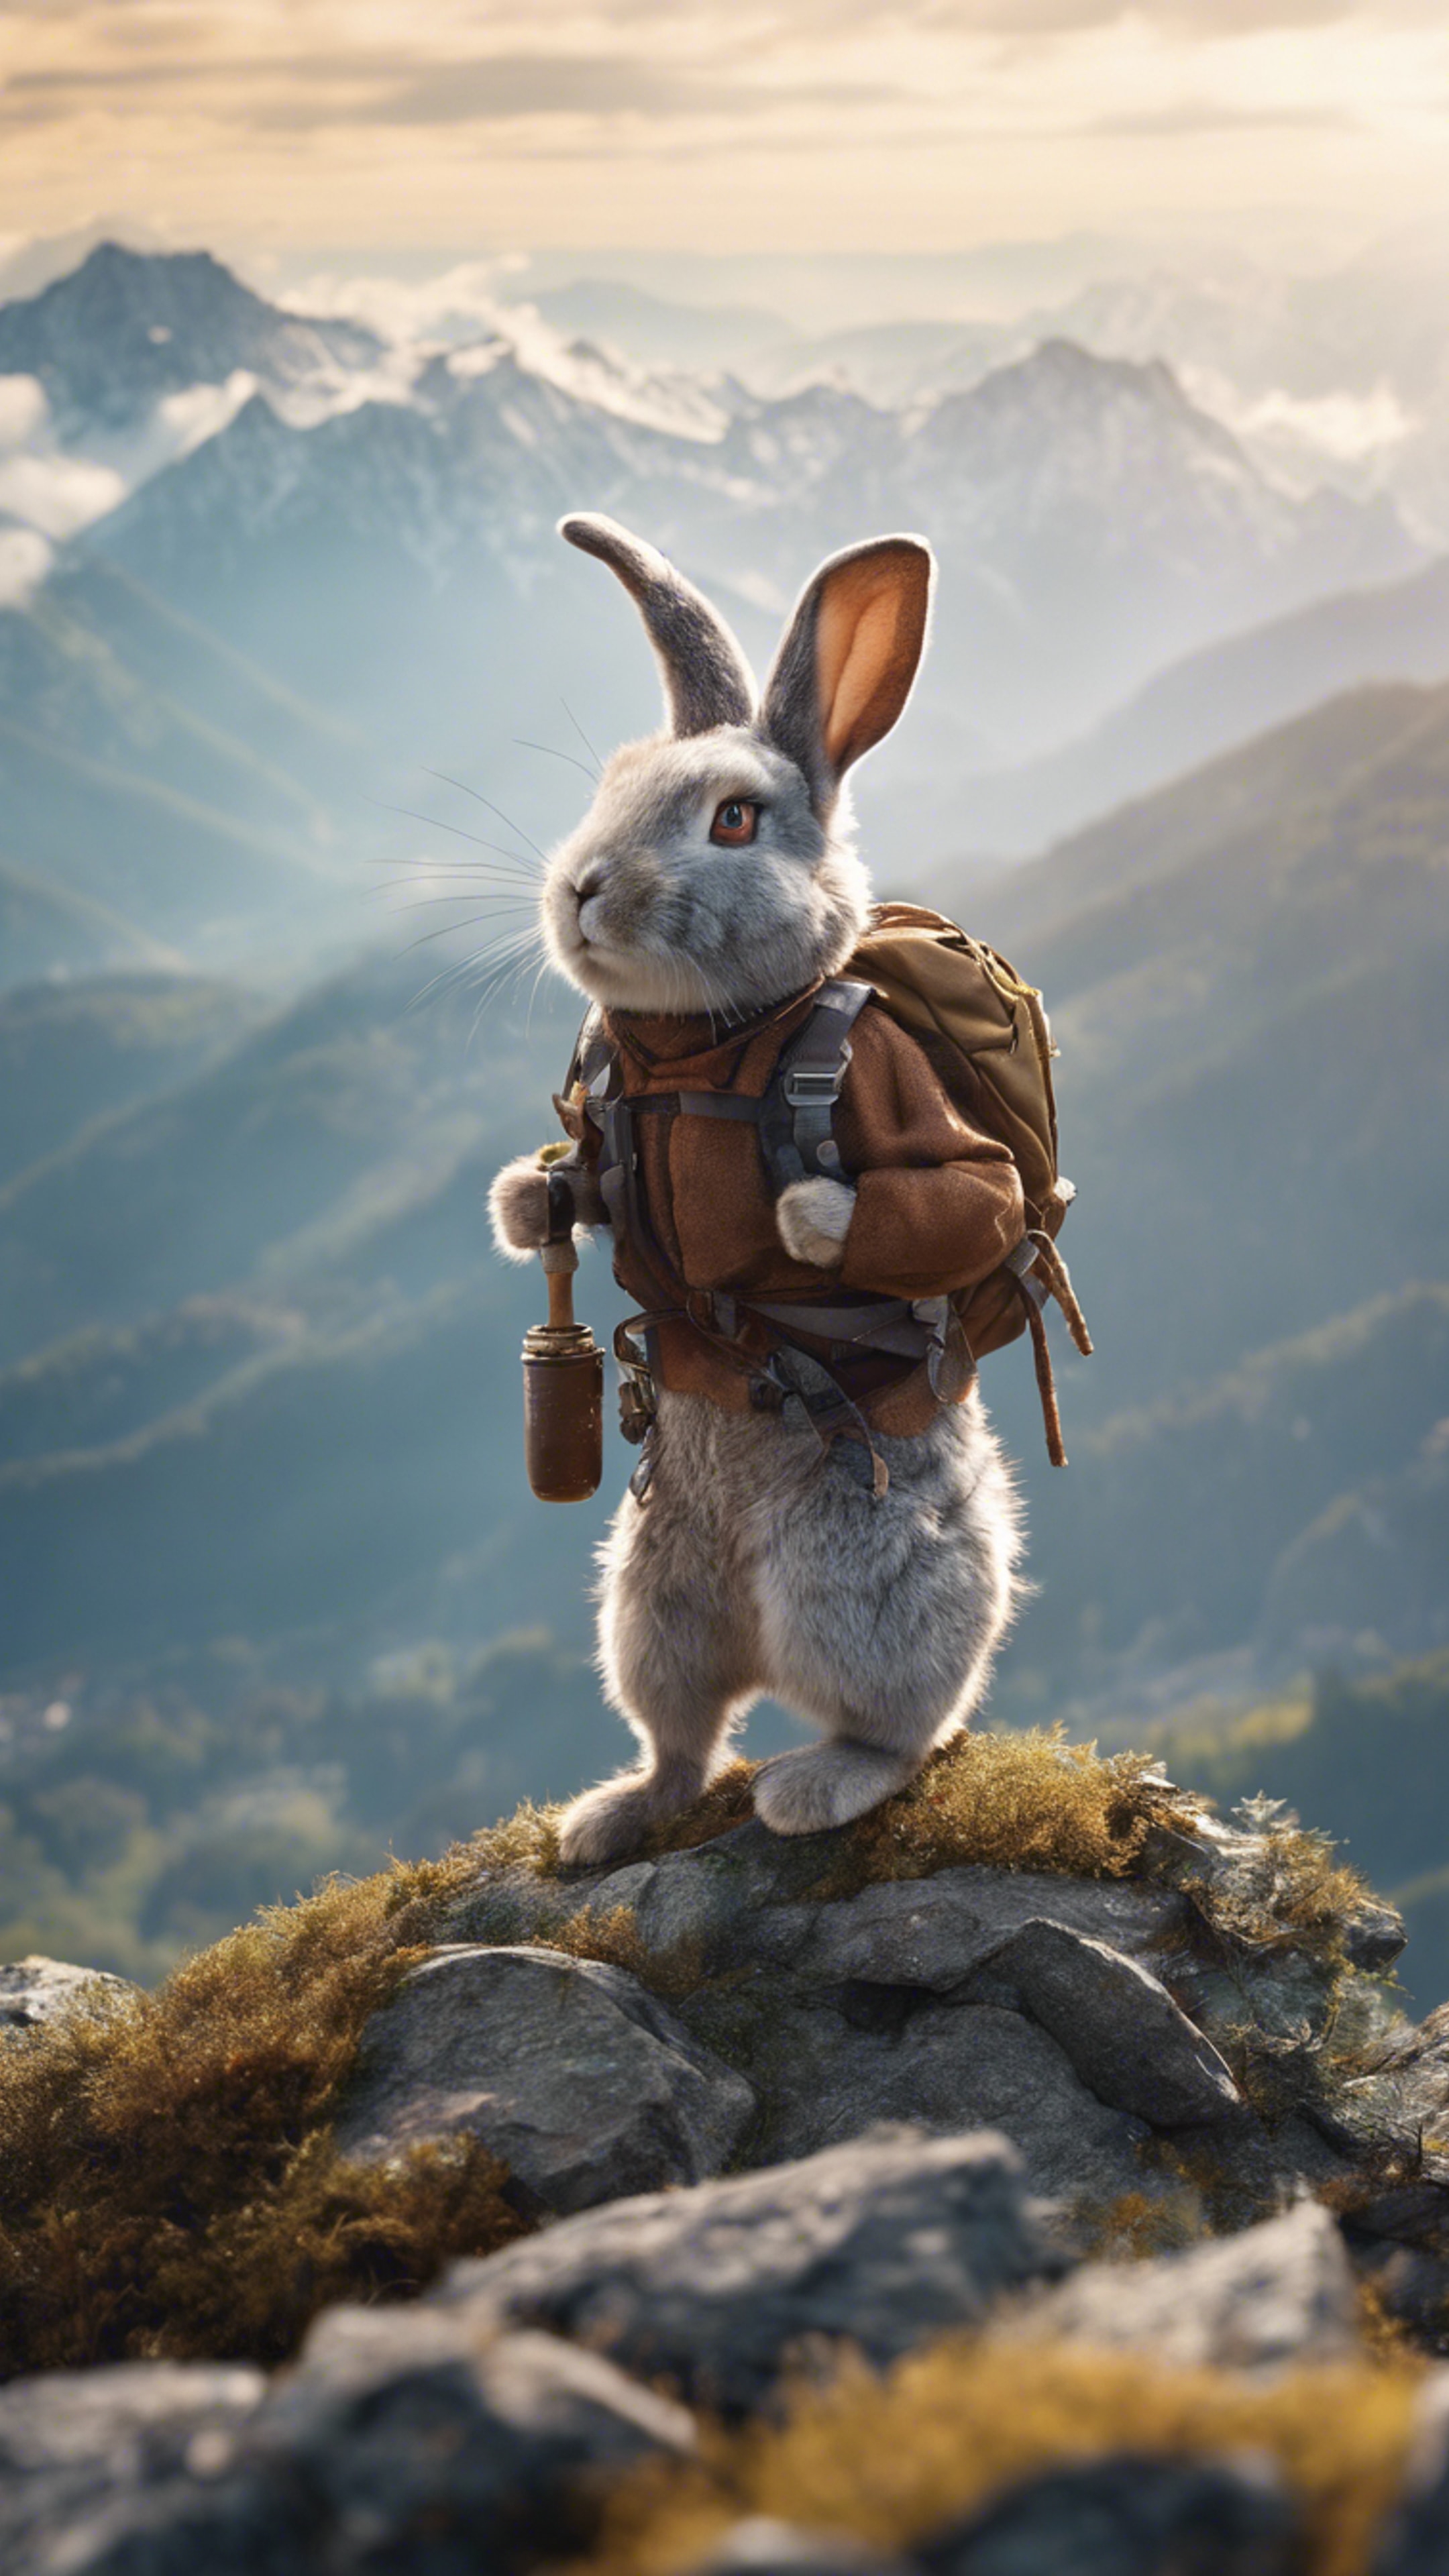 A Rabbit mountaineer conquering a treacherous peak. Tapeet[faadaab6eec04e17a877]